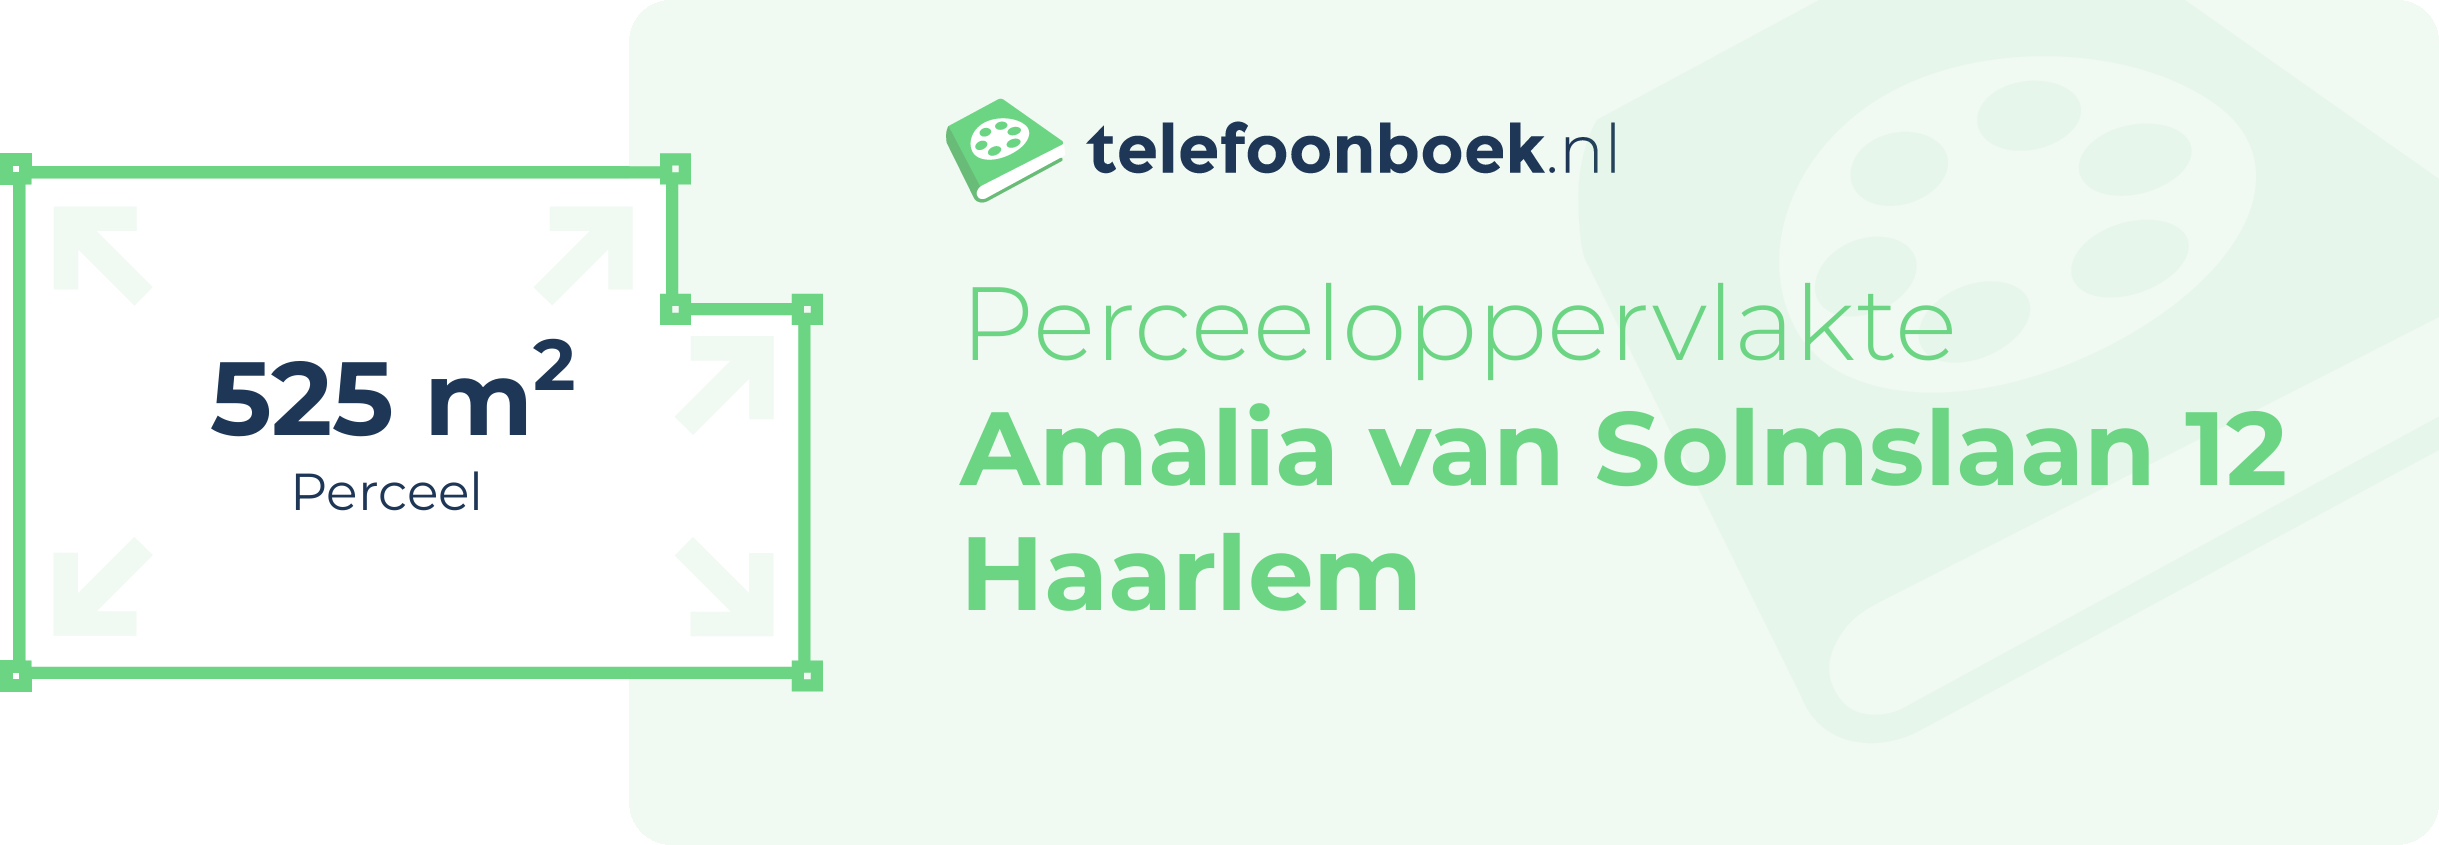 Perceeloppervlakte Amalia Van Solmslaan 12 Haarlem